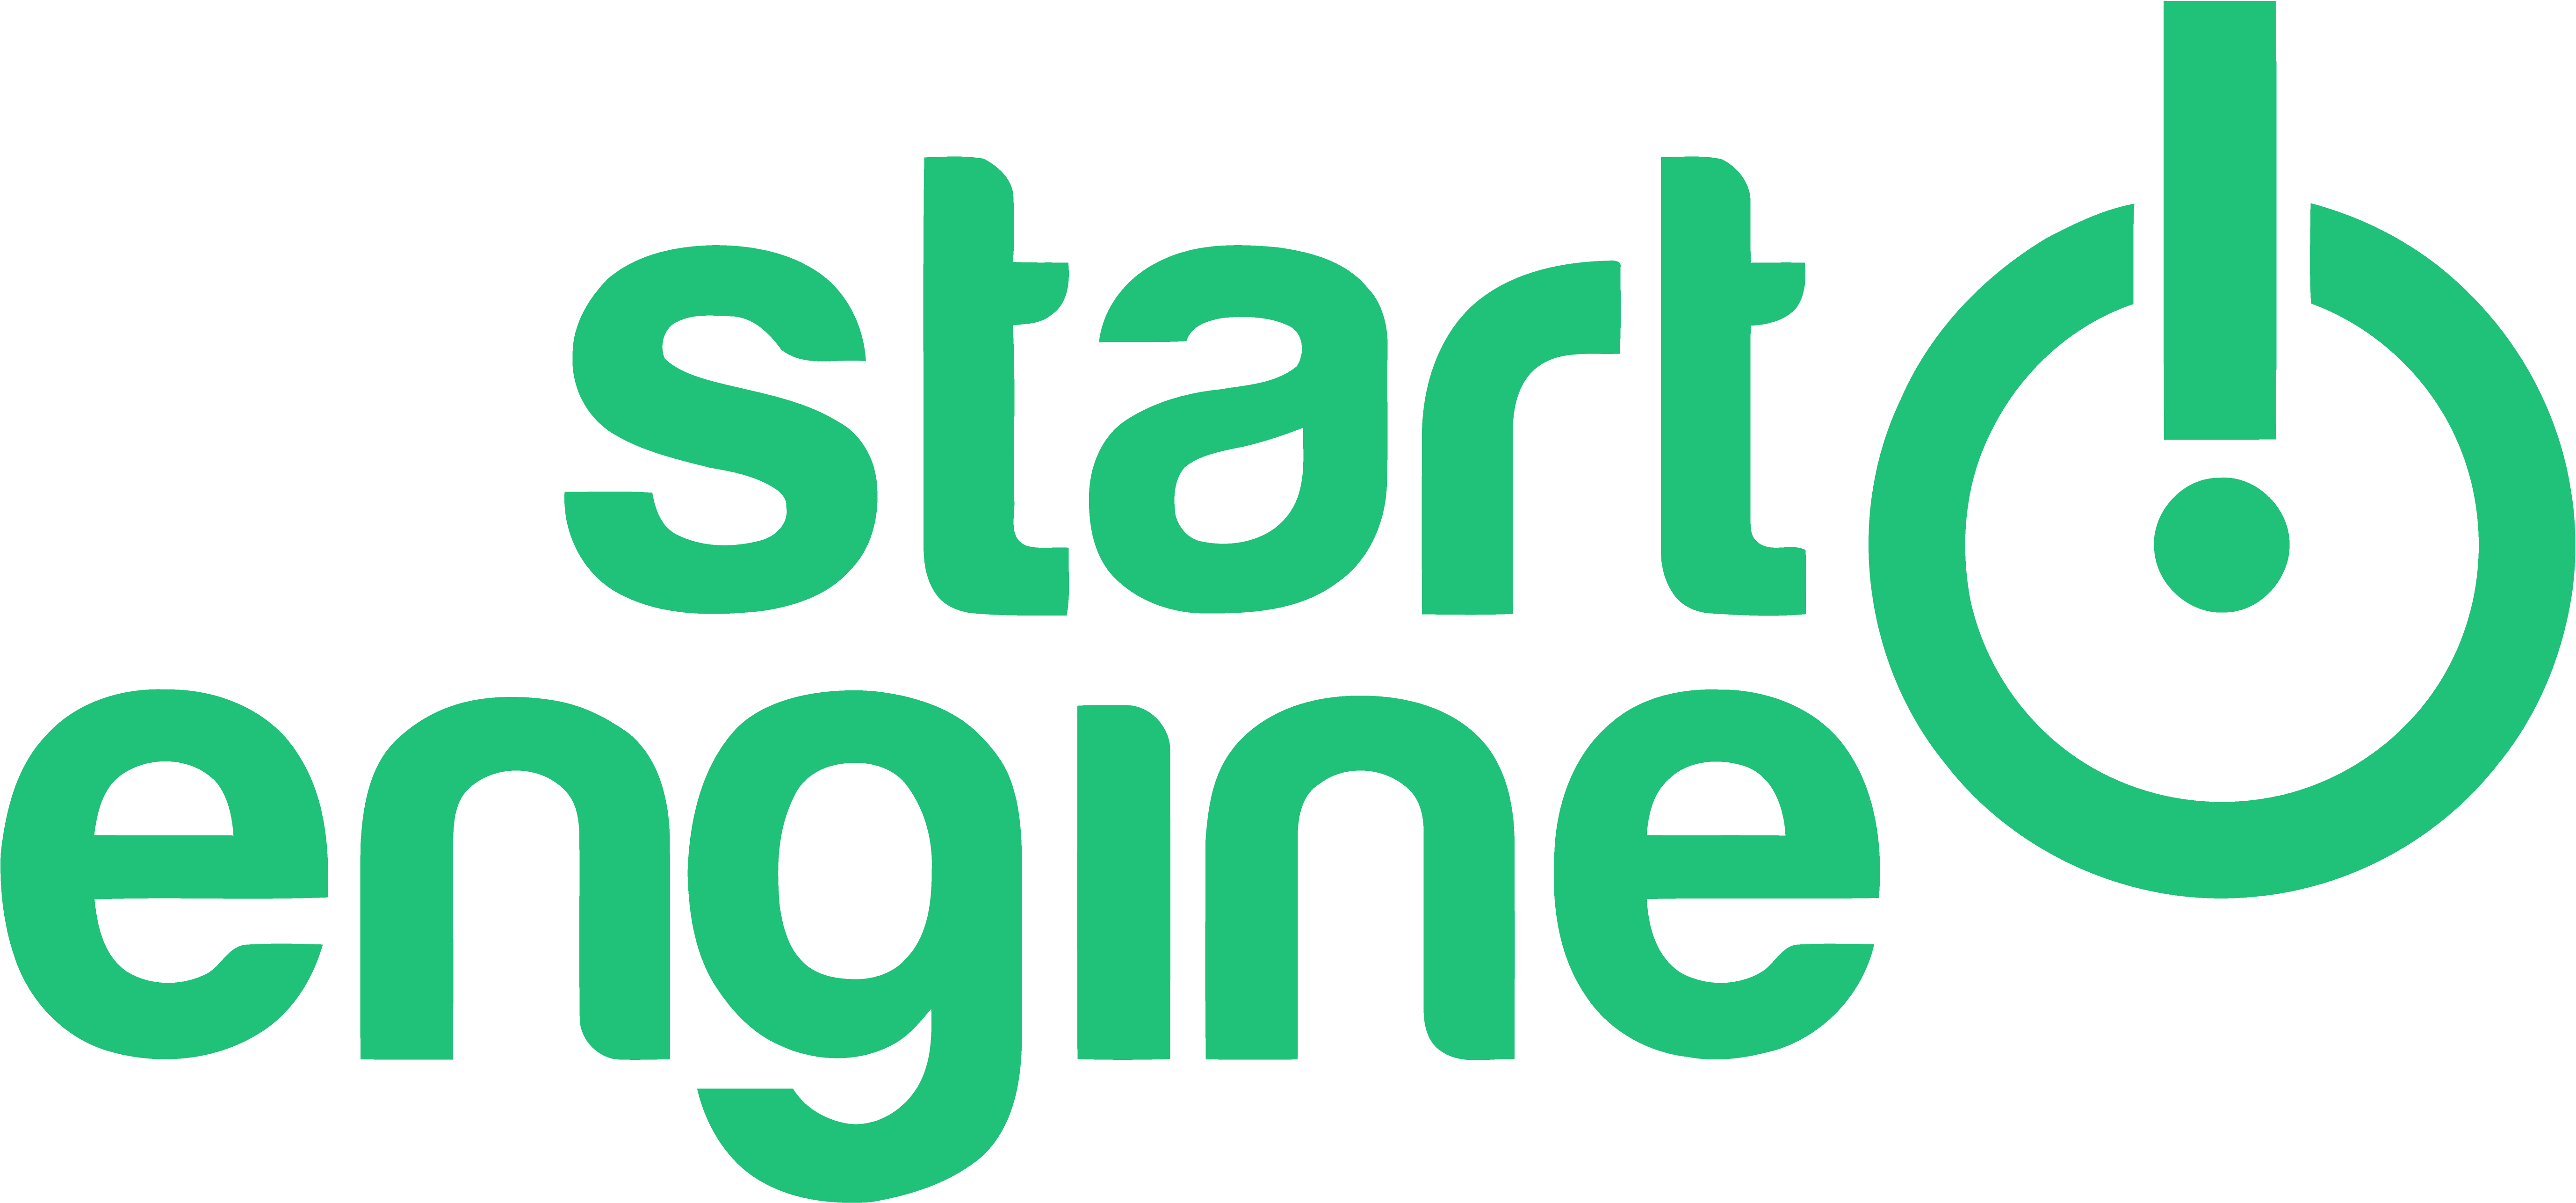 Design jobs at StartEngine